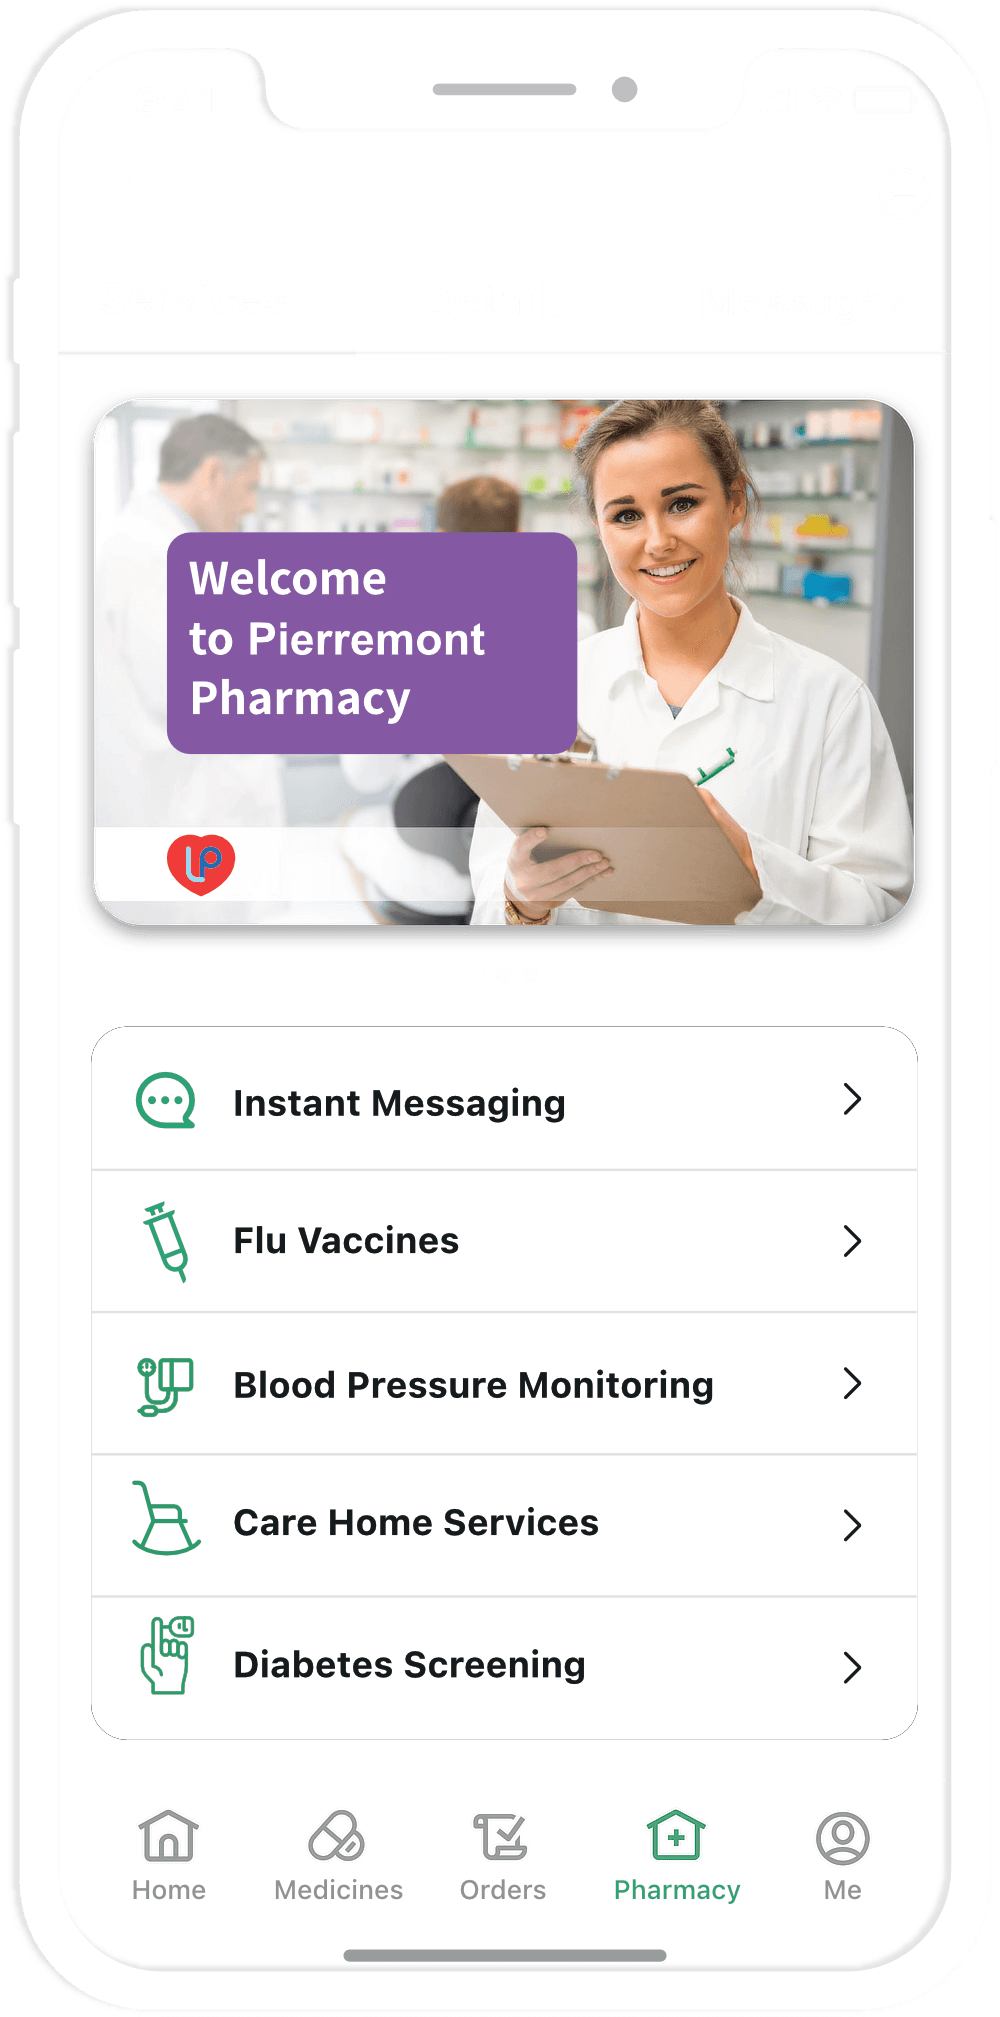 Pierremont Pharmacy App